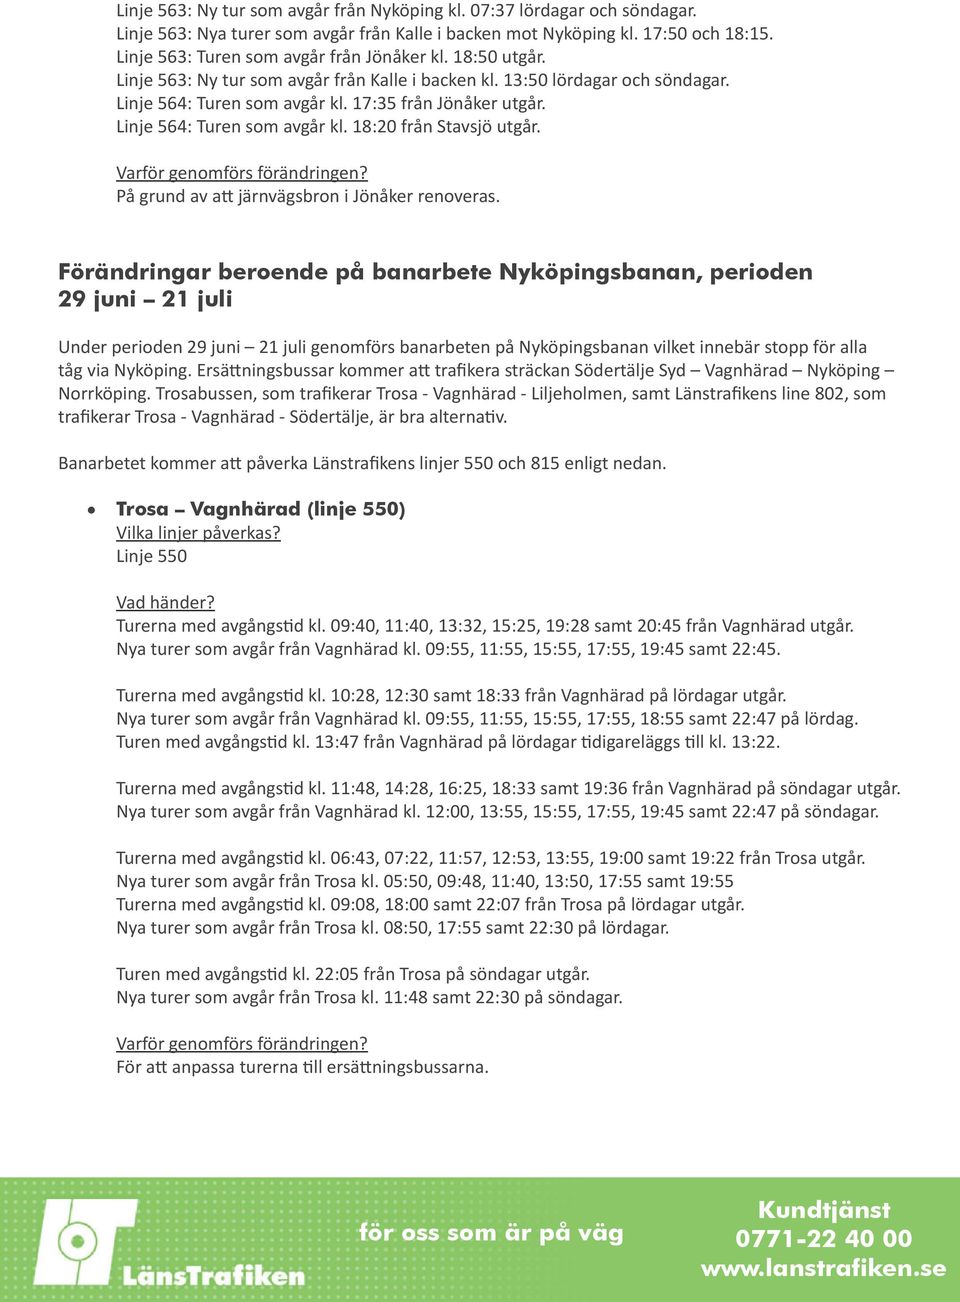 Linje 564: Turen som avgår kl. 18:20 från Stavsjö utgår. På grund av att järnvägsbron i Jönåker renoveras.